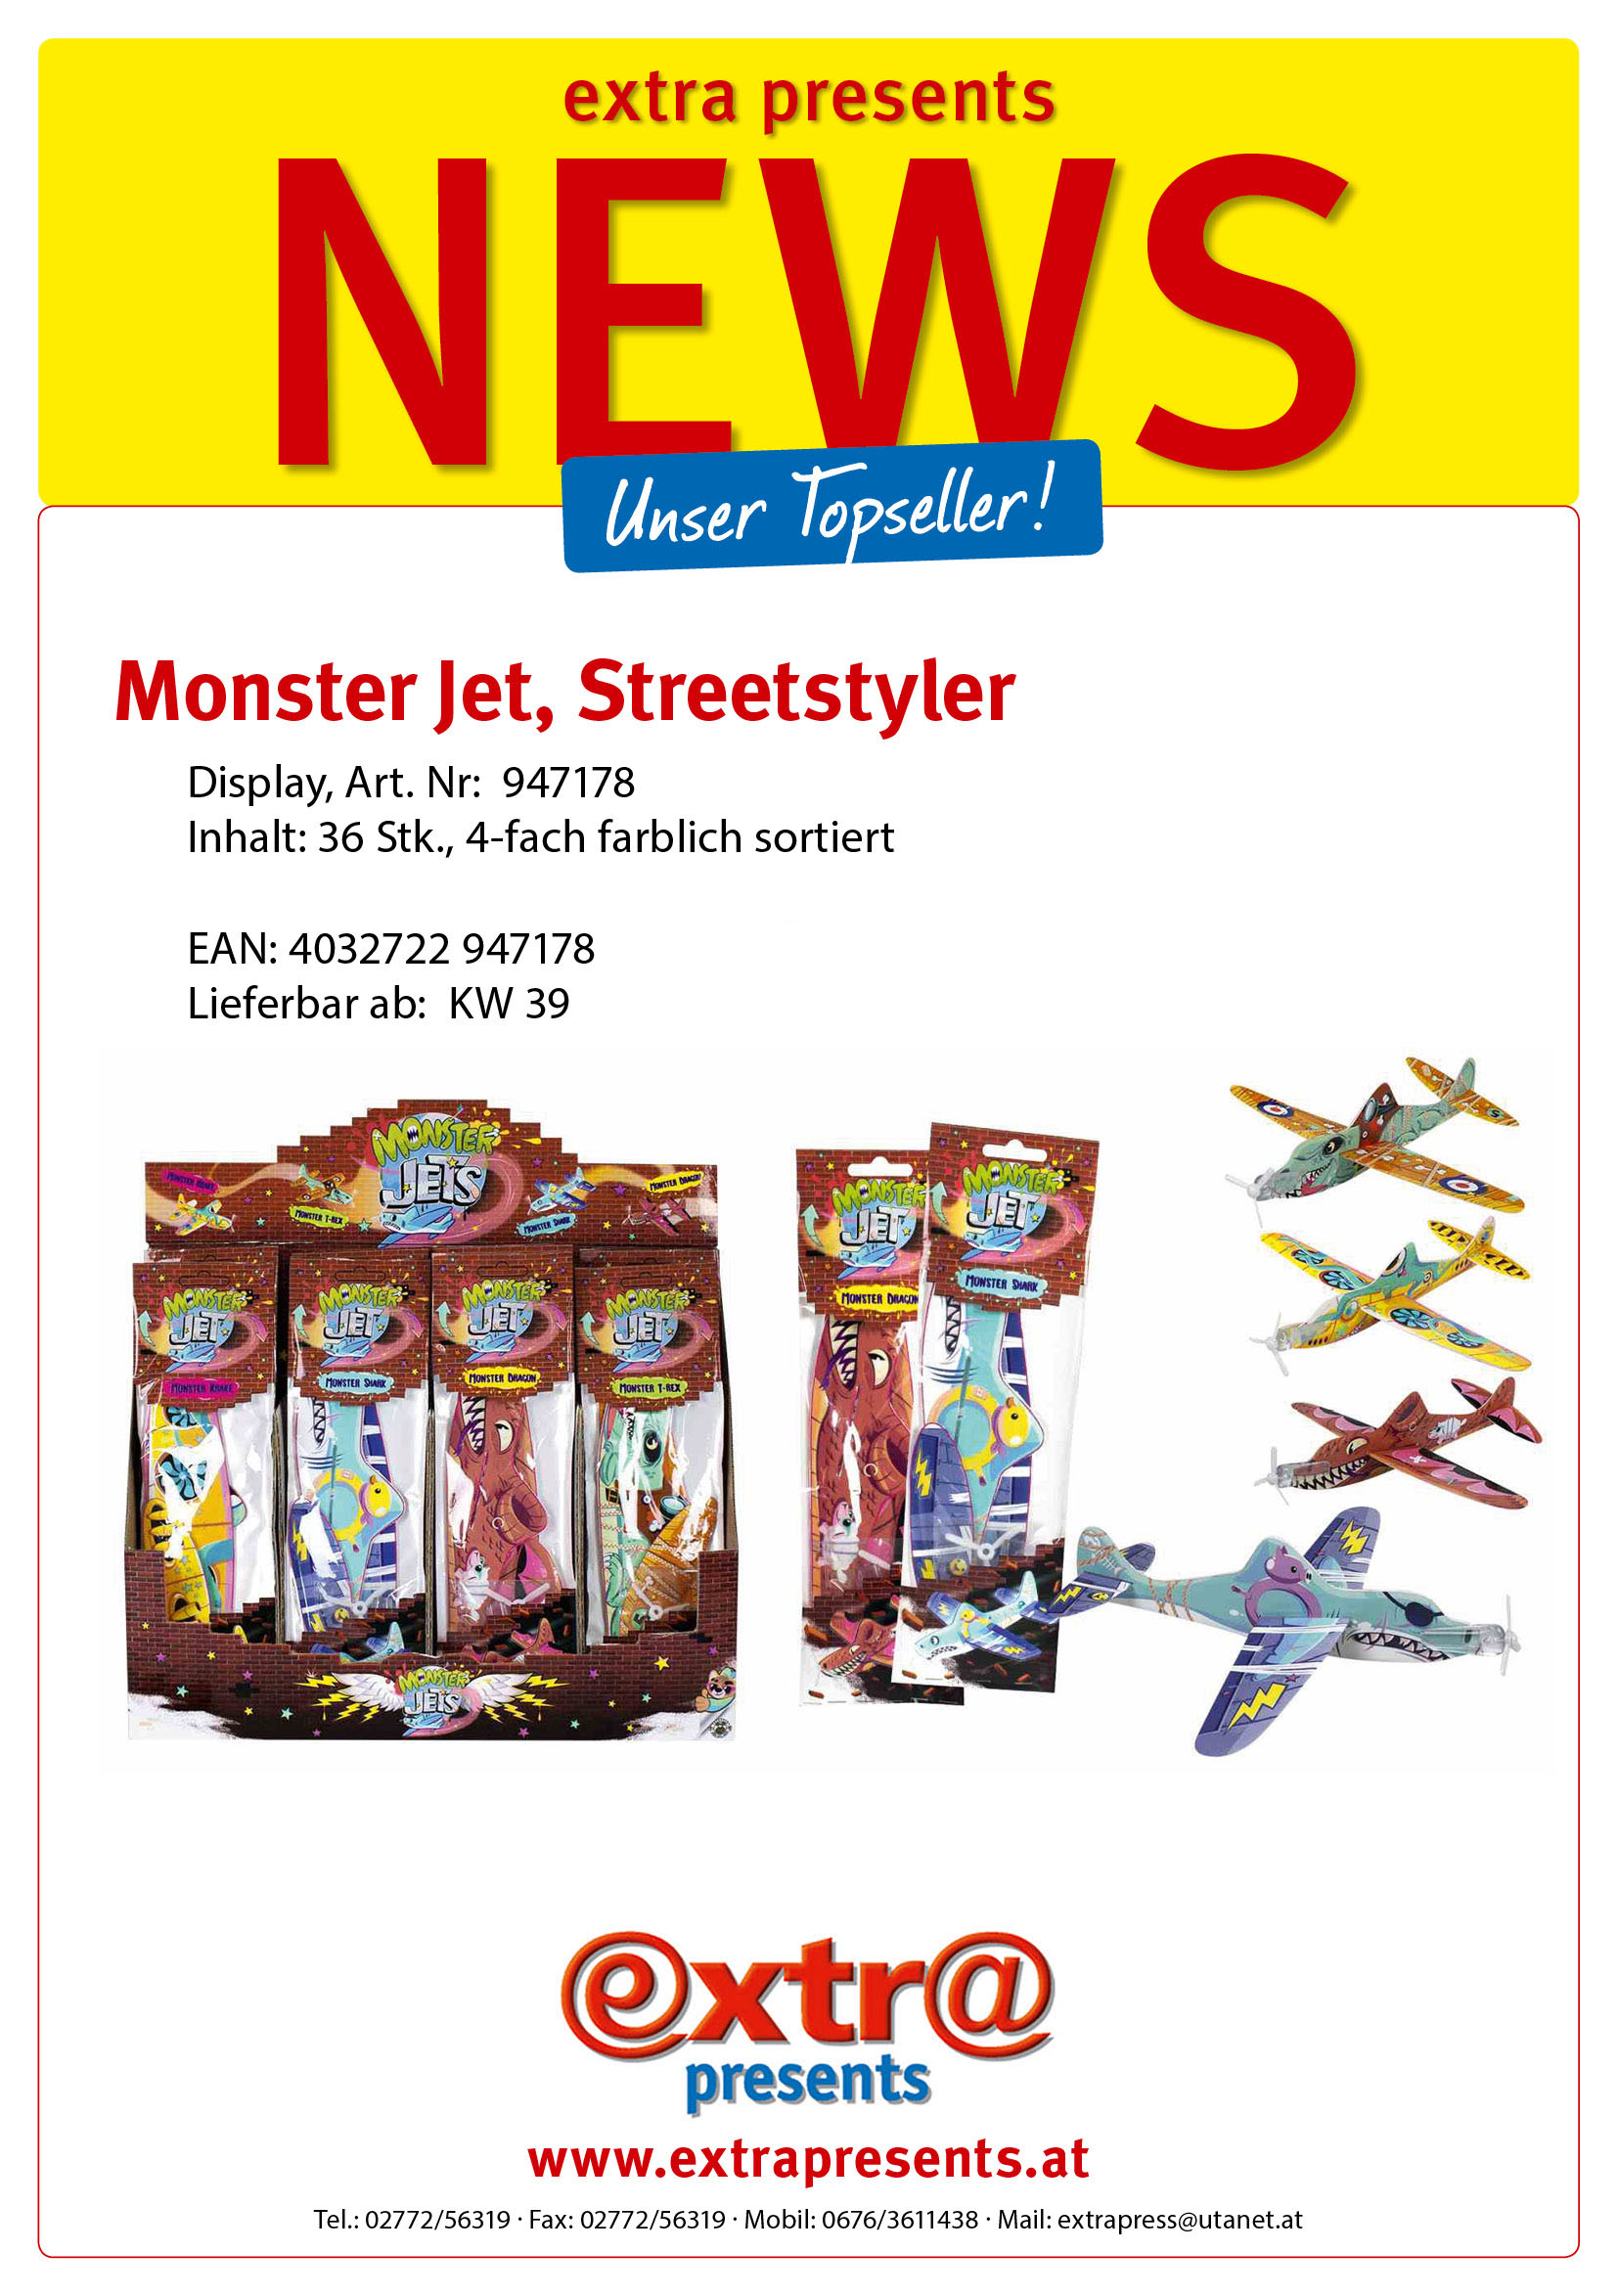 Monster Jet, Streetstyler